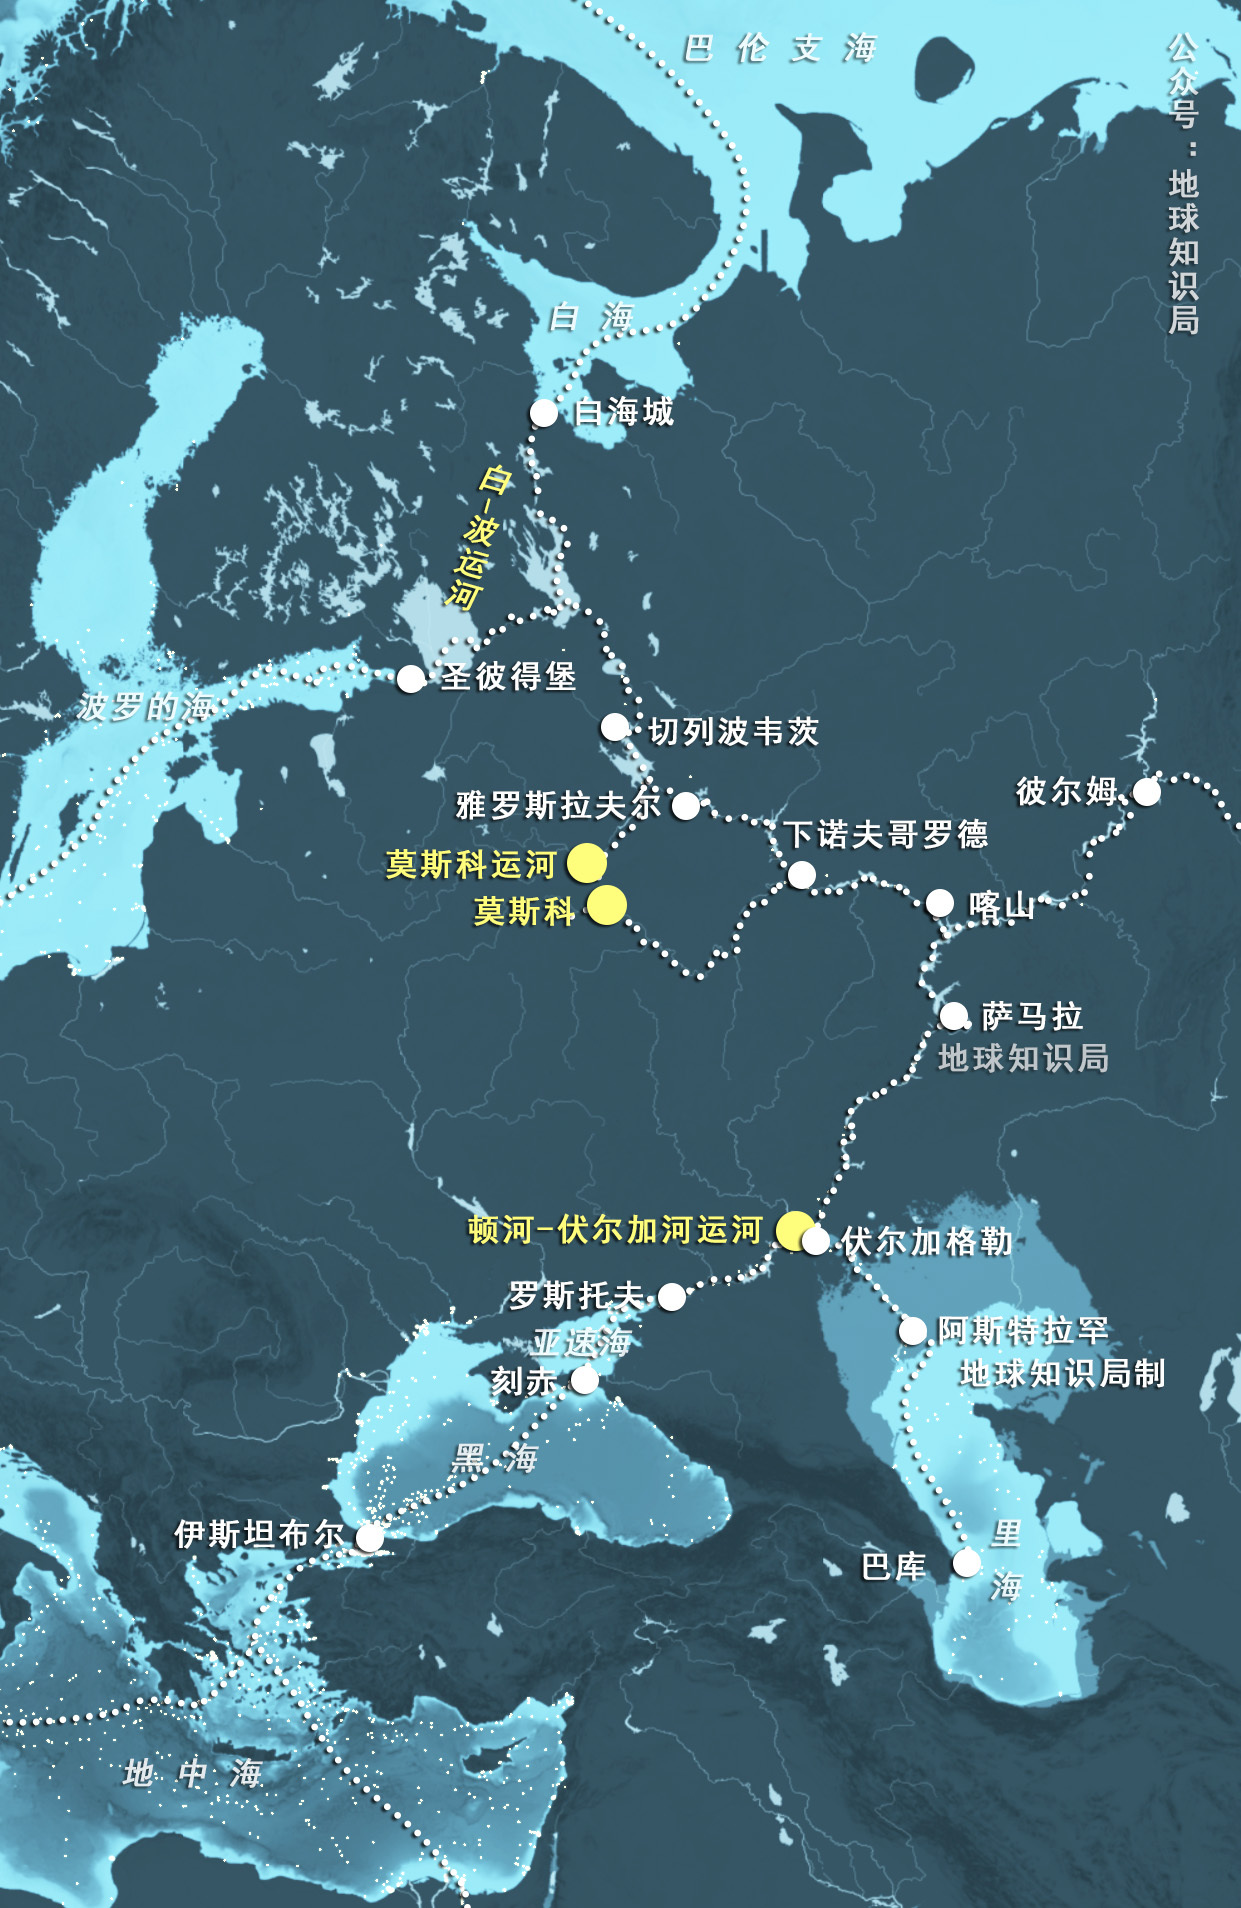 高清俄罗斯铁路、管道和城市分布图大图_世界地理地图_初高中地理网